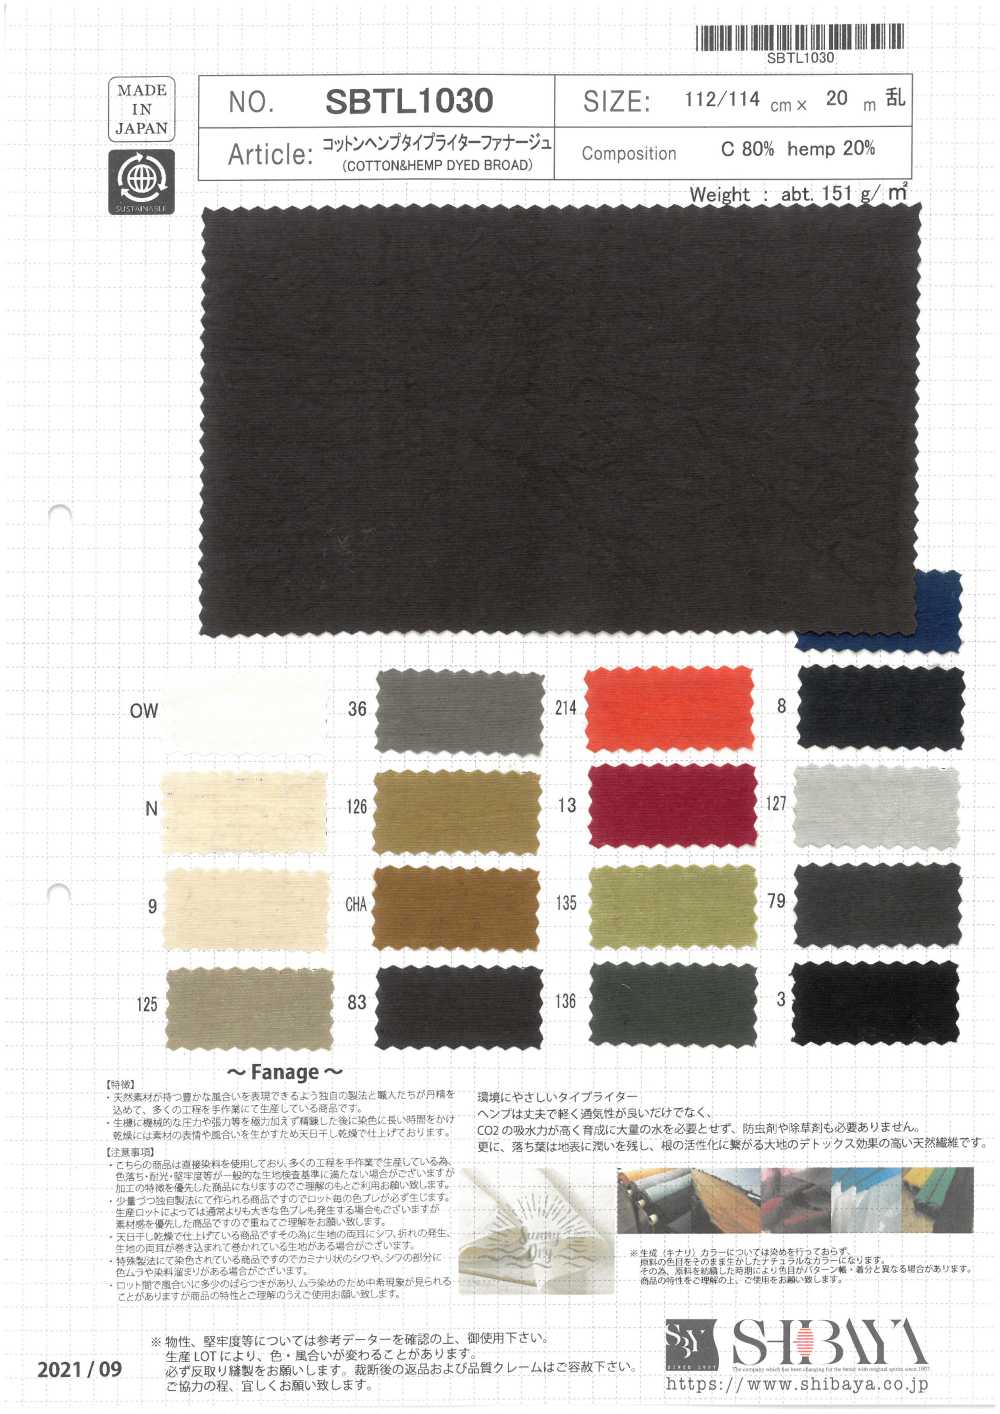 SBTL1030 Fanage De Tissu De Machine à écrire En Coton / Chanvre[Fabrication De Textile] SHIBAYA